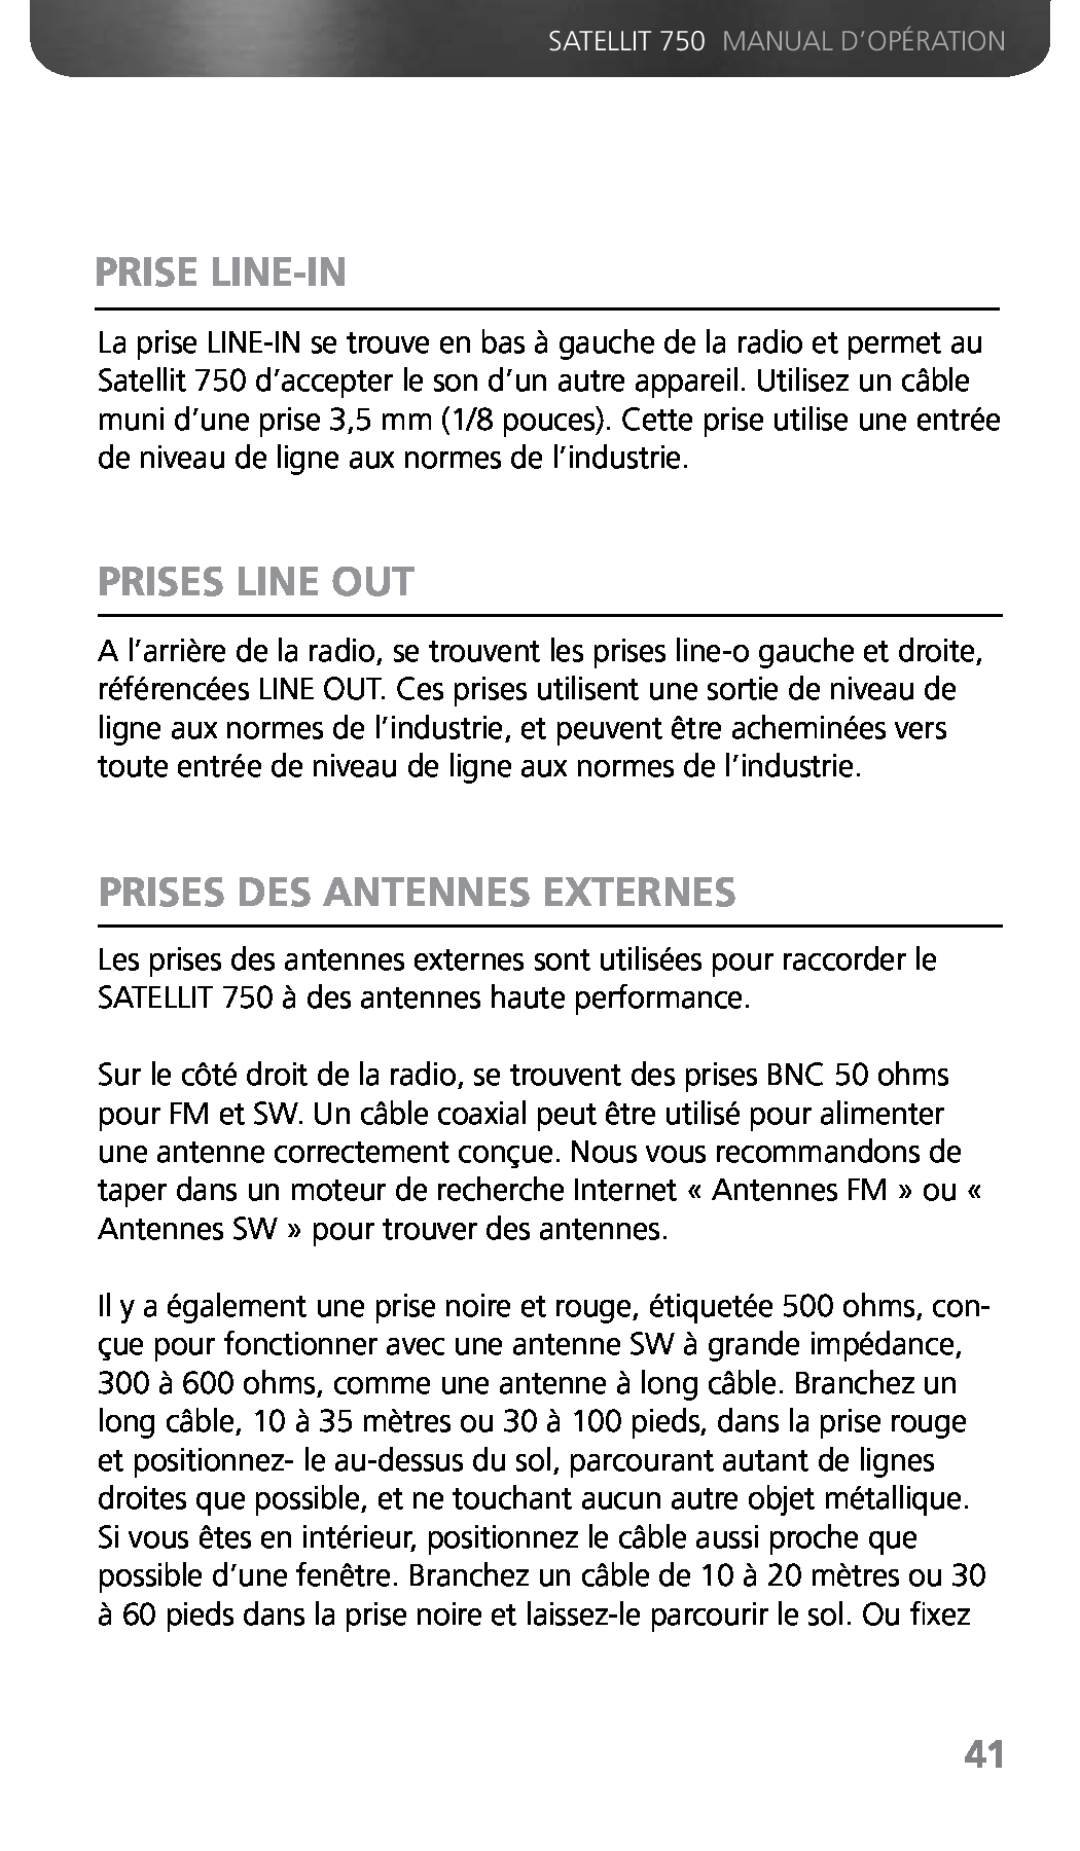 Grundig 750 owner manual Prise Line-In, Prises Line Out, Prises Des Antennes Externes 